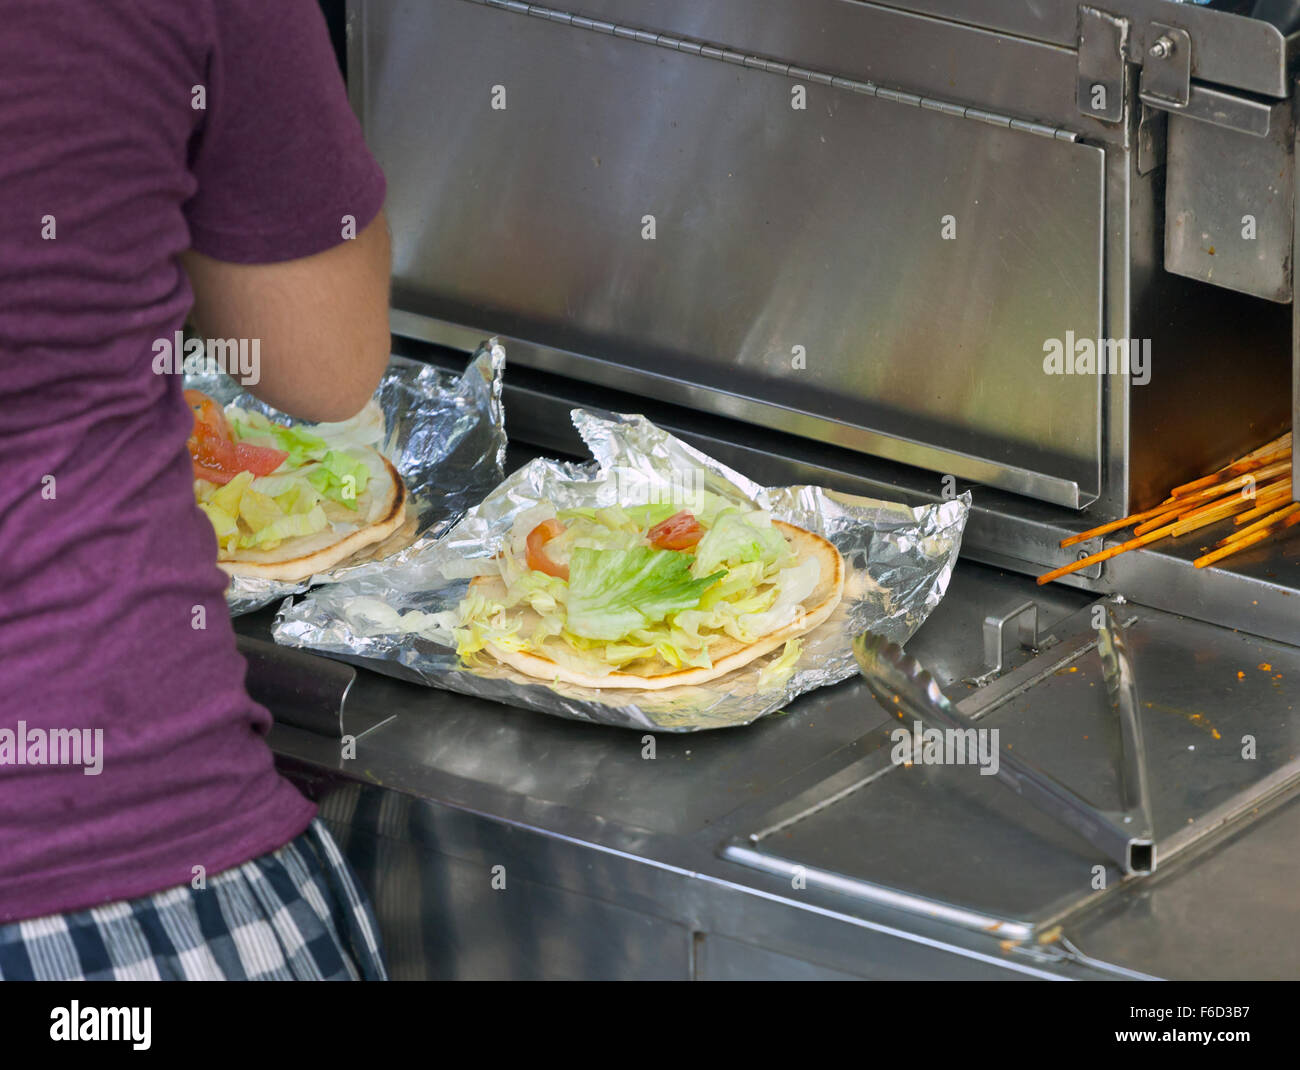 Street food vendor prépare un pain plat avec salade et d'autres ingrédients. New York City, USA. Banque D'Images